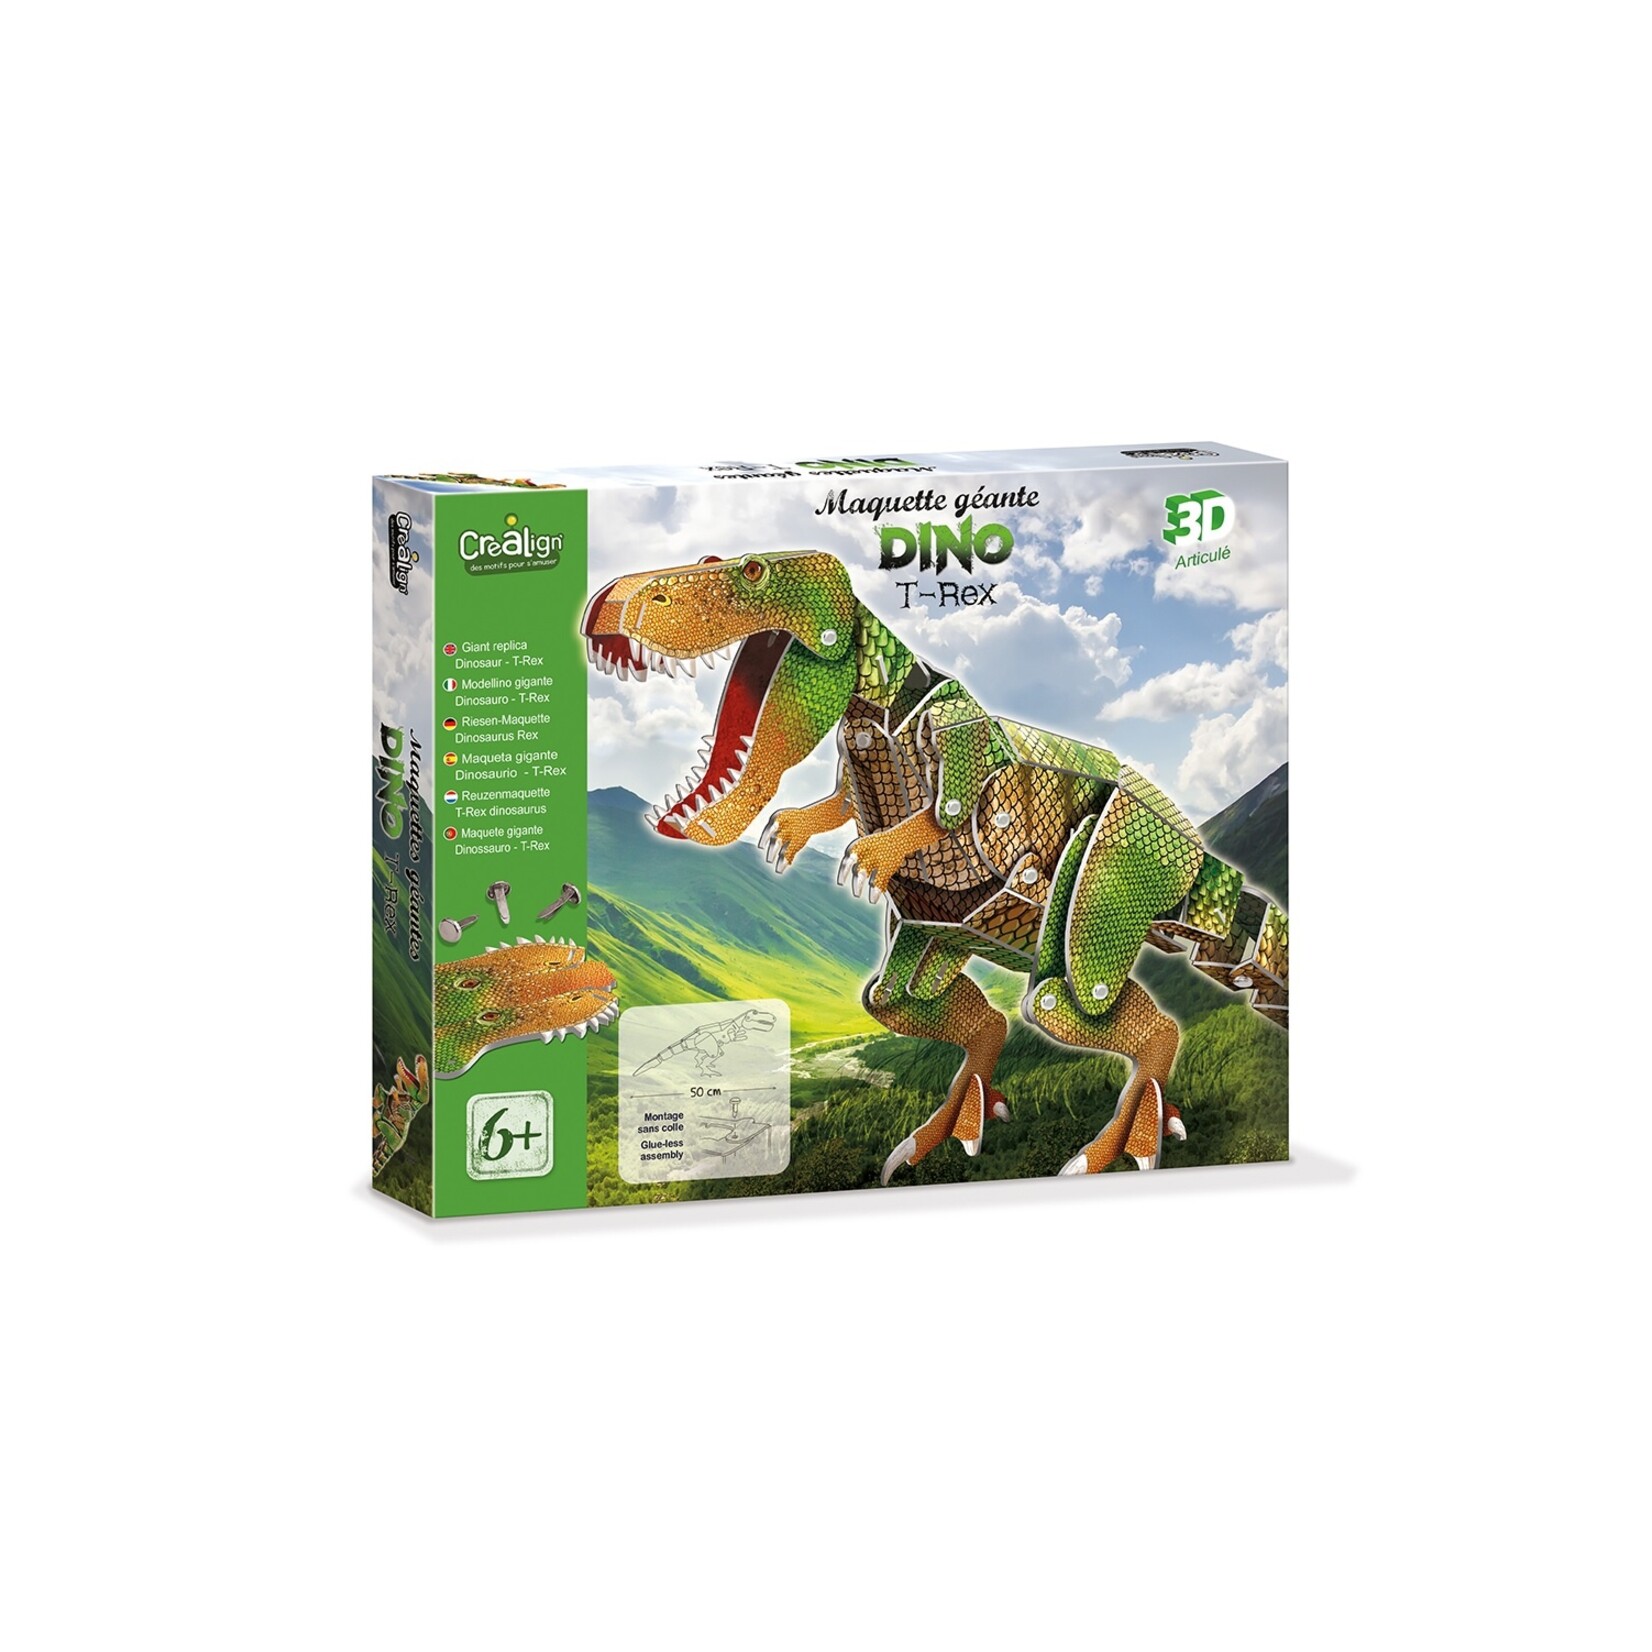 Crealign Maquette géante - Dinosaure T-Rex